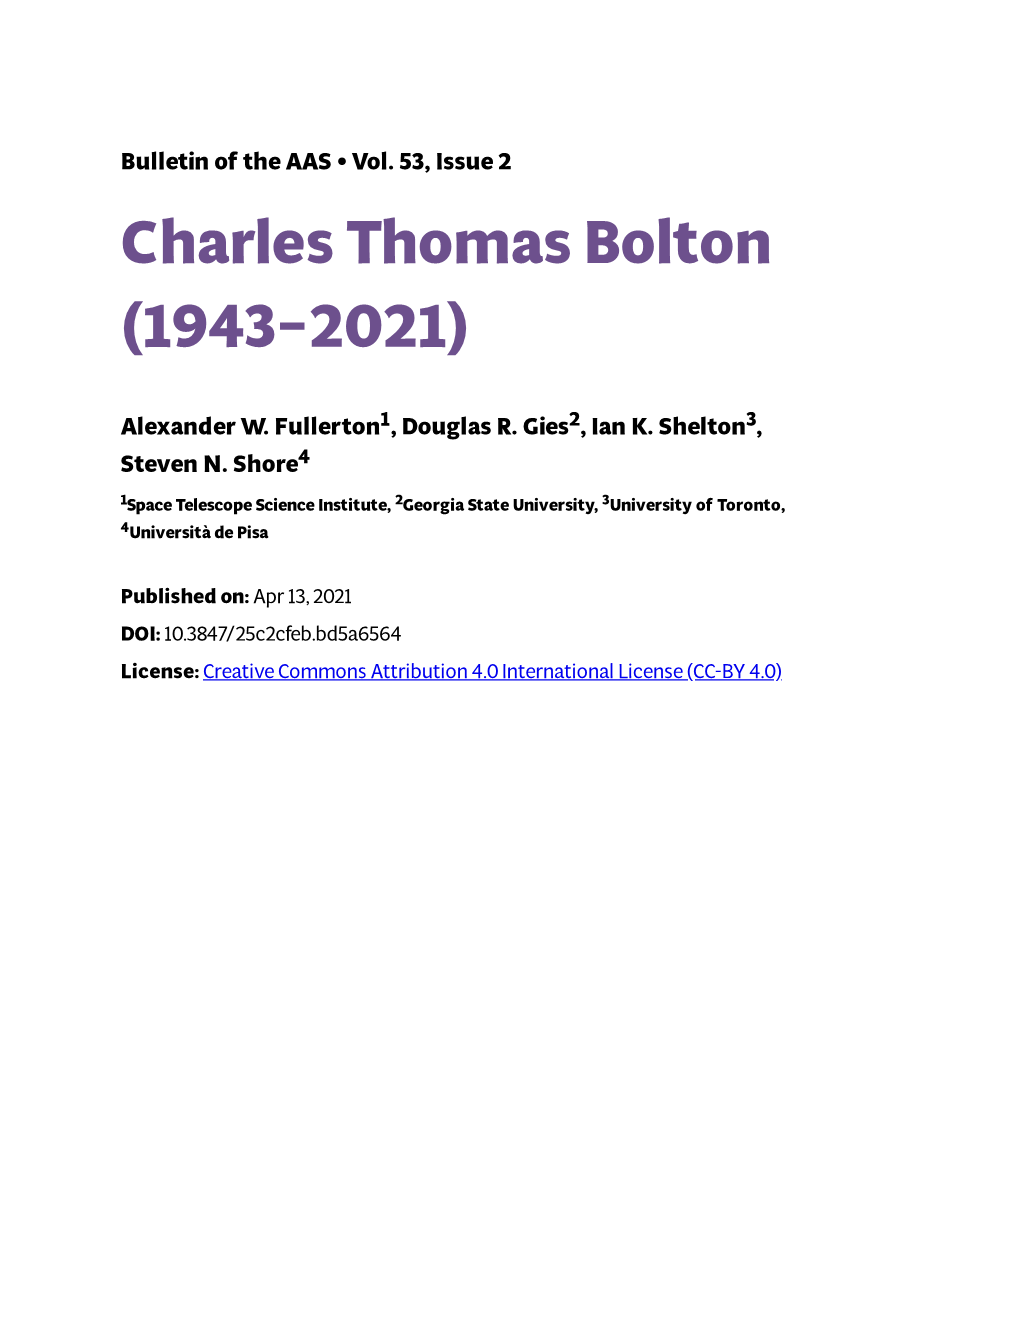 Charles Thomas Bolton (1943–2021)